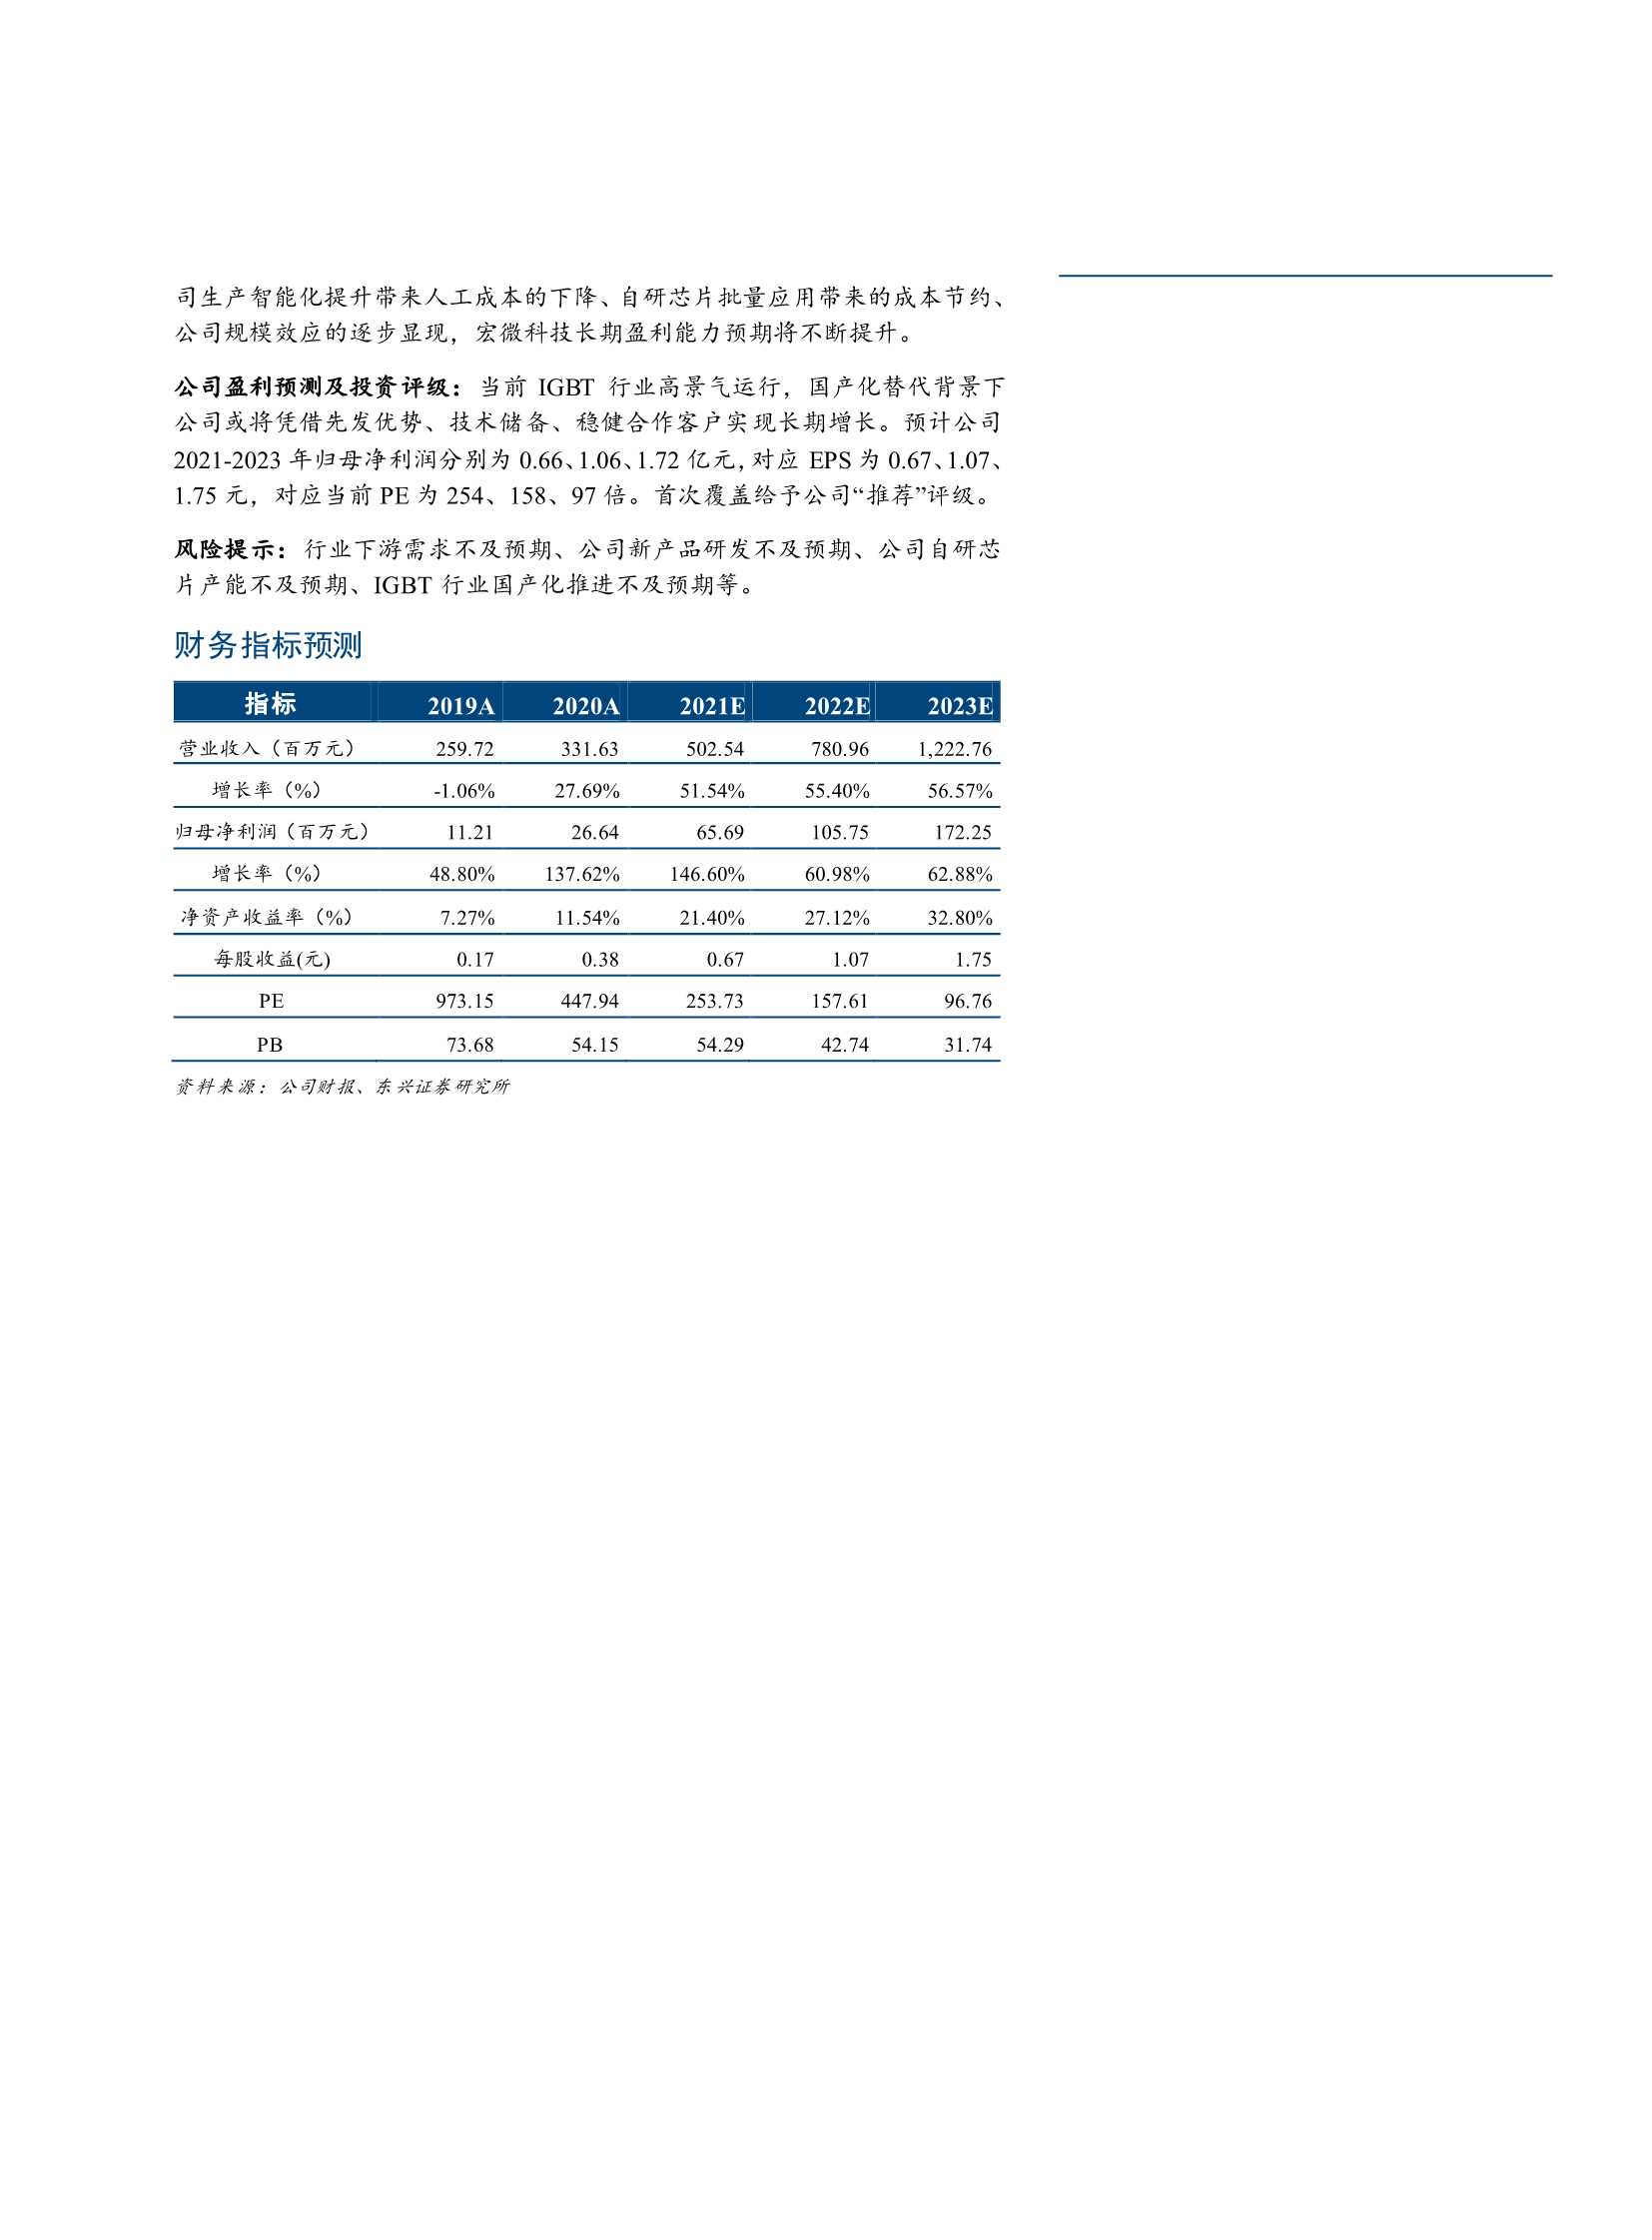 东兴证券-宏微科技-688711-精耕IGBT产业，下游需求推动公司成长-20211123-22页